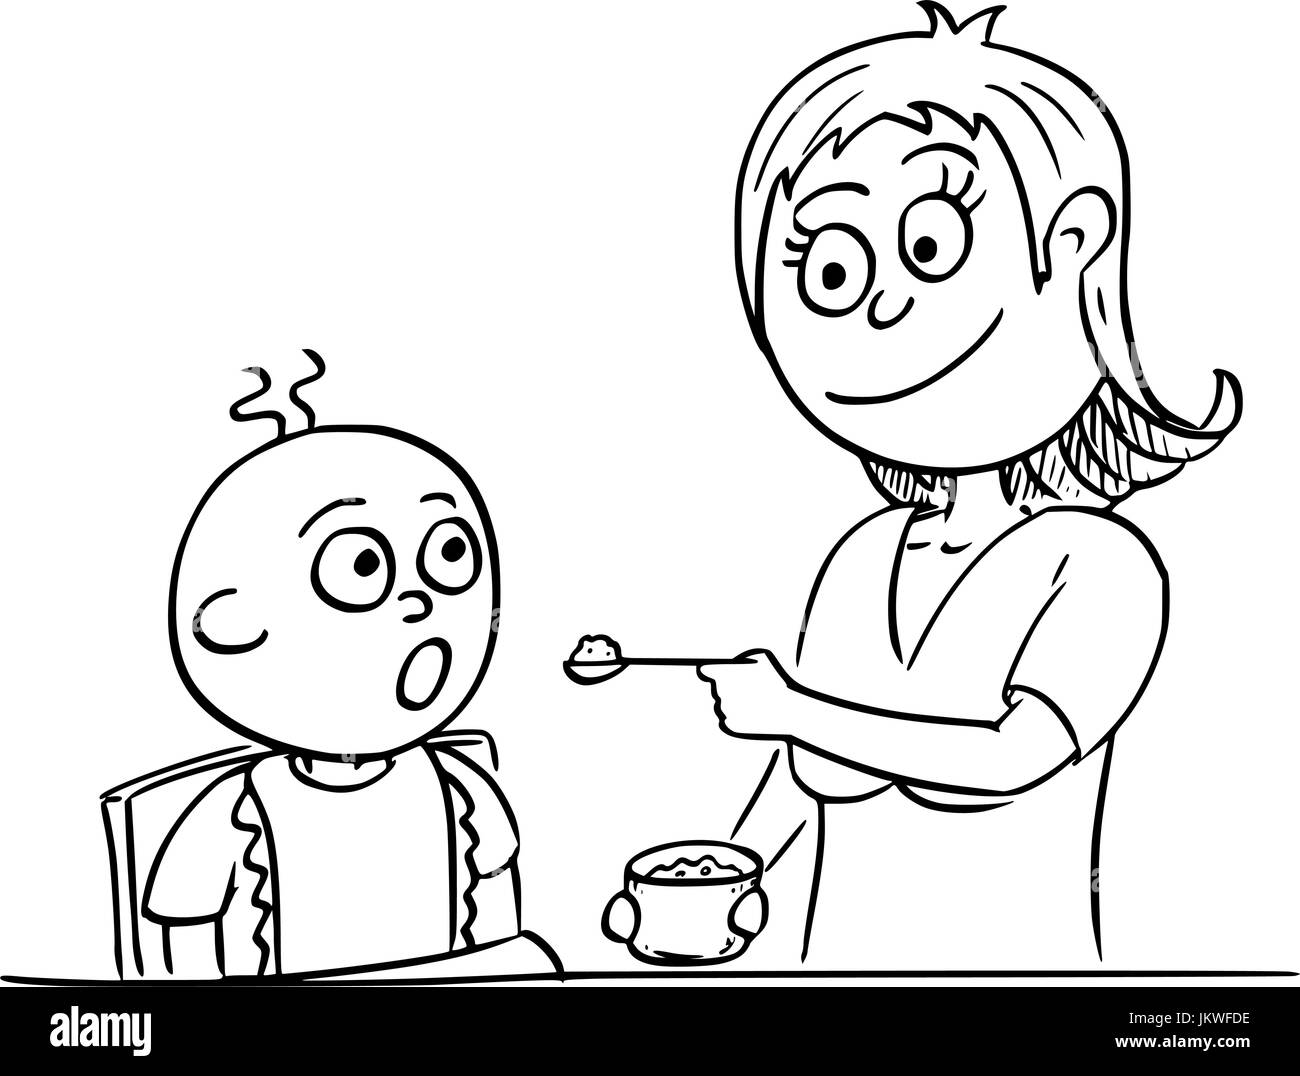 Disegno a mano cartoon illustrazione vettoriale di madre mom mamma baby di alimentazione con pap. Illustrazione Vettoriale